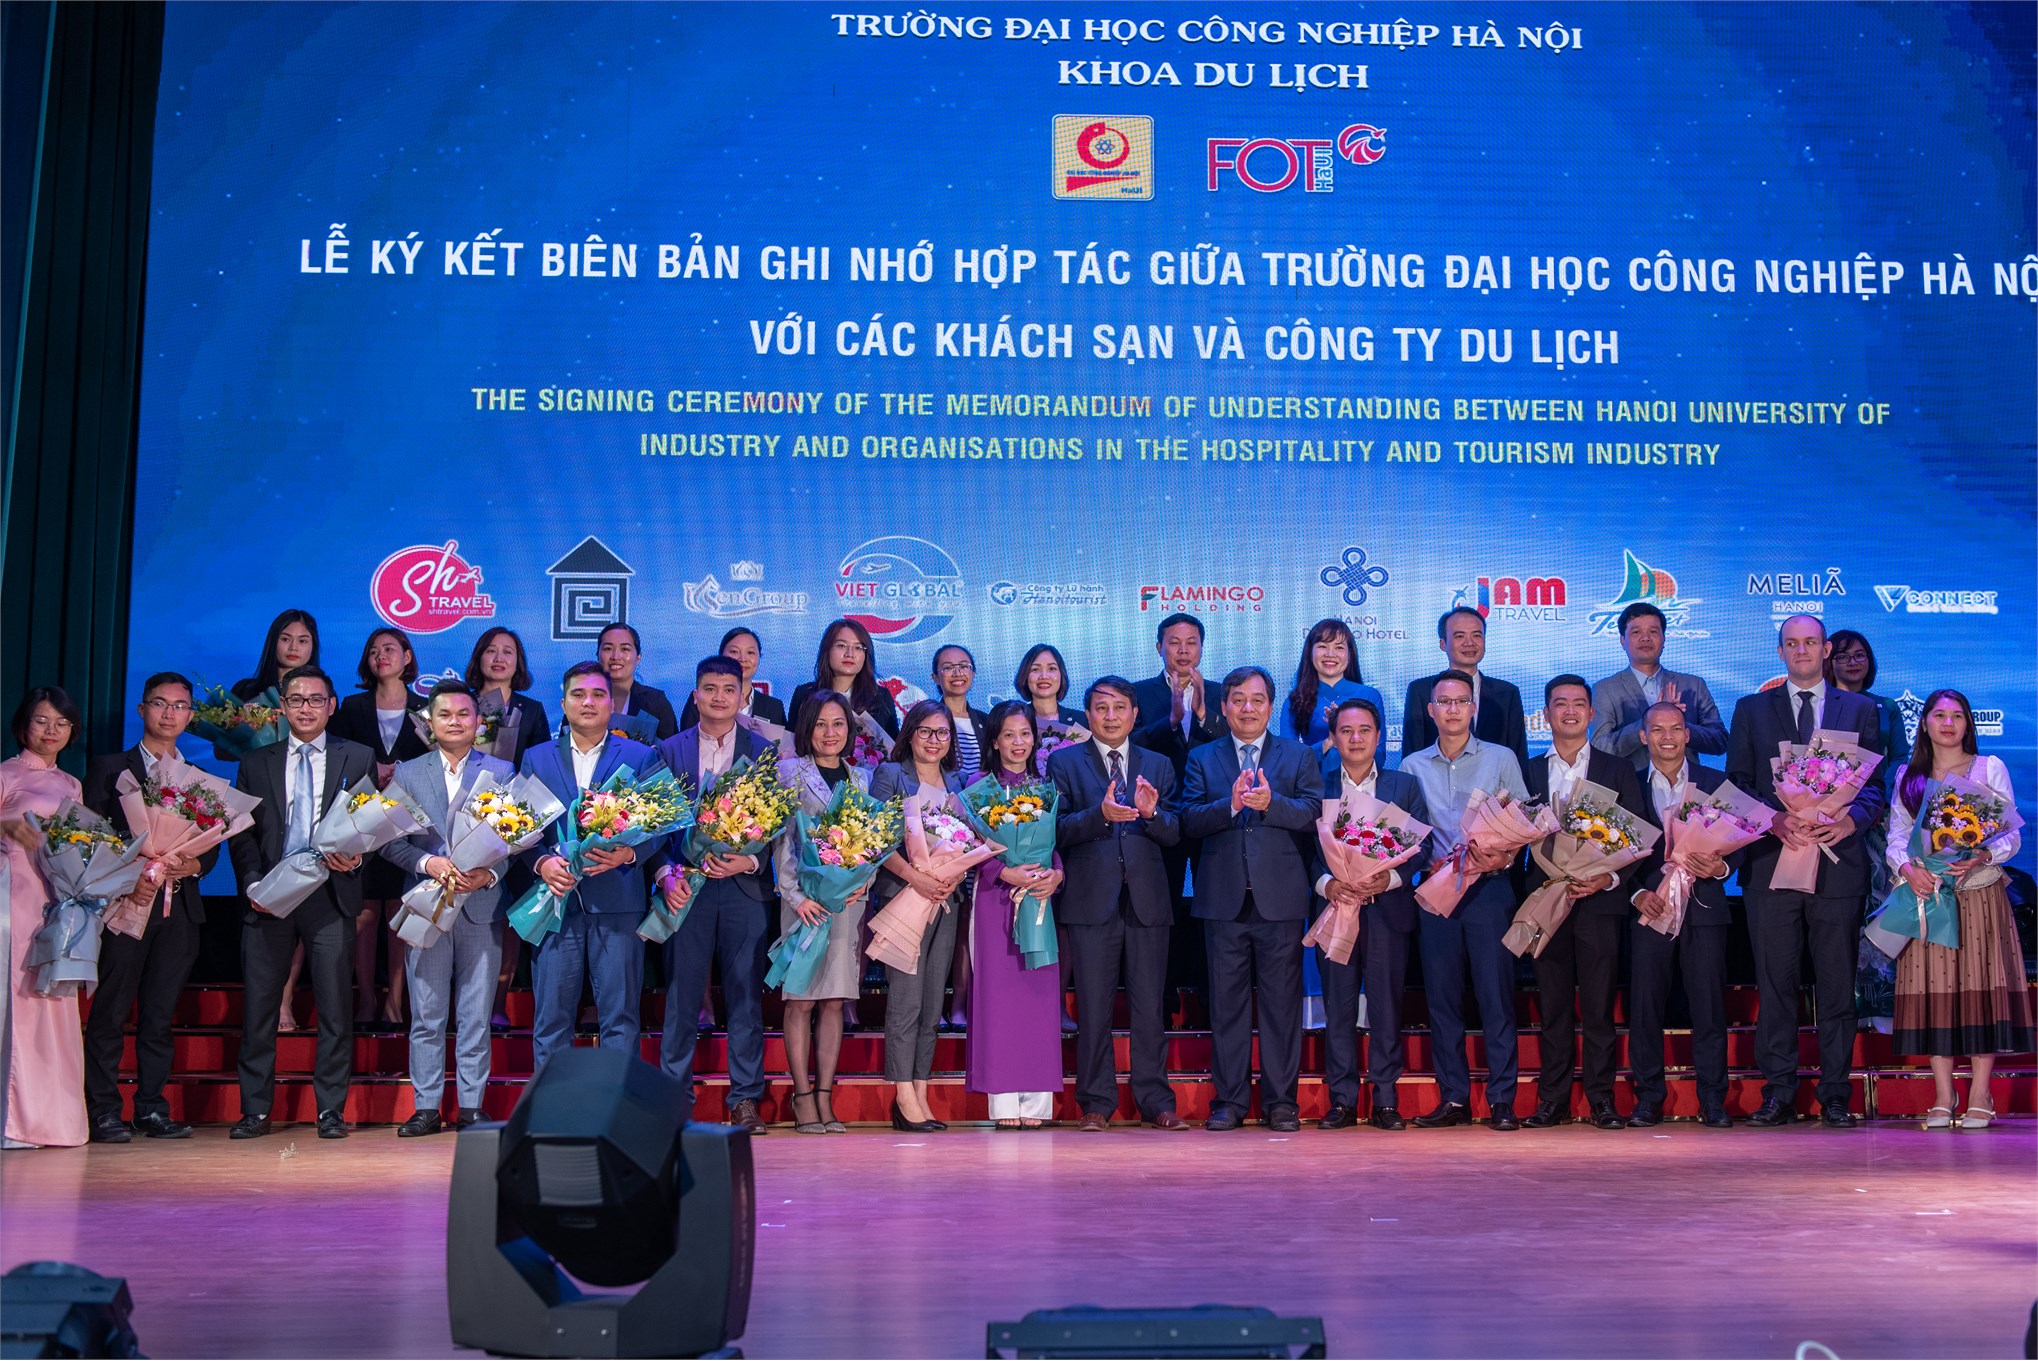 Lễ ký kết biên bản ghi nhớ hợp tác giữa trường Đại học Công nghiệp Hà Nội và các công ty du lịch